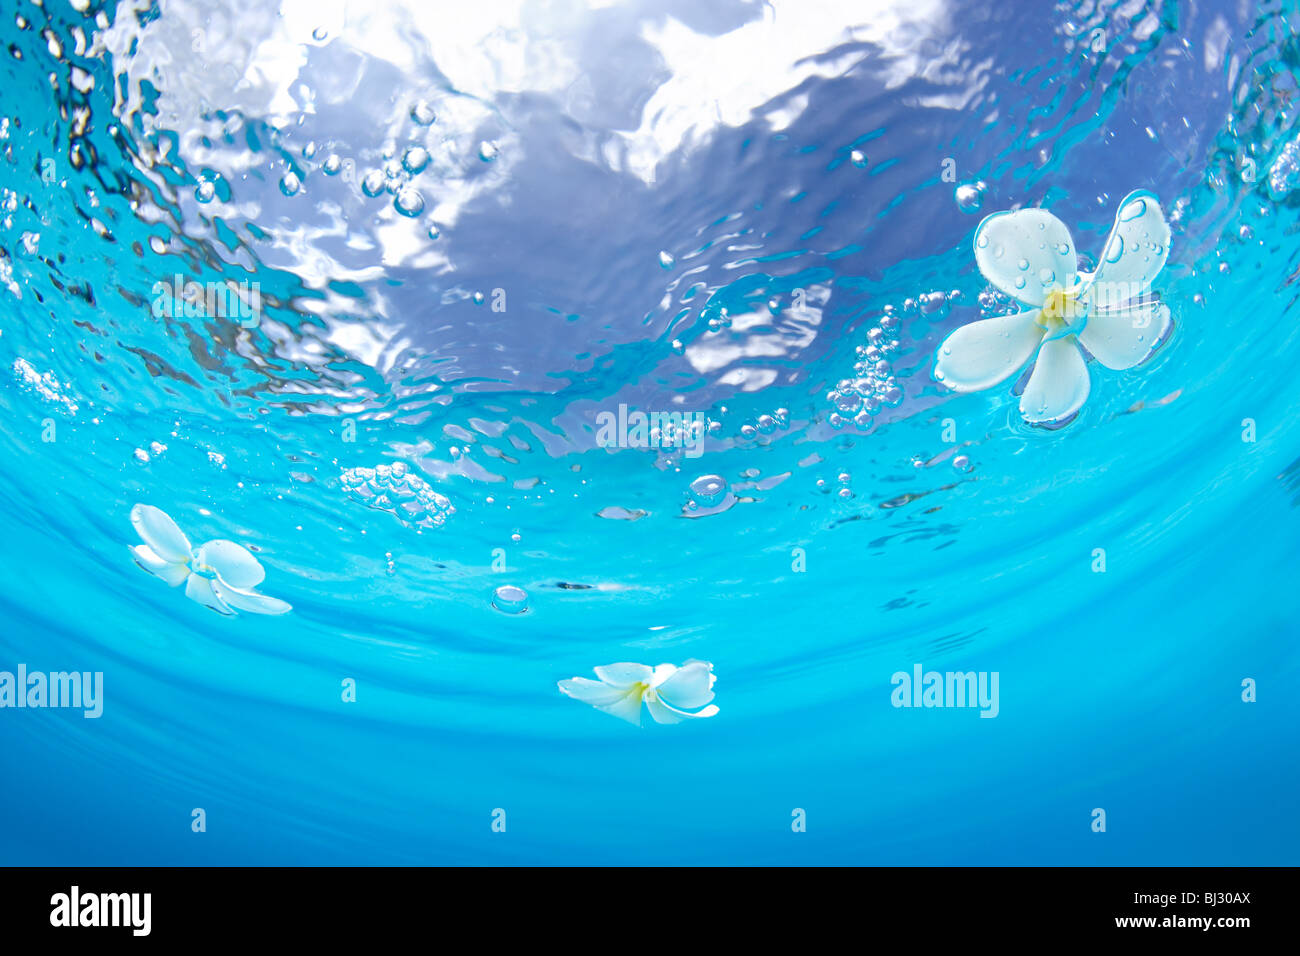 Plumerias galleggianti sull'acqua Foto Stock